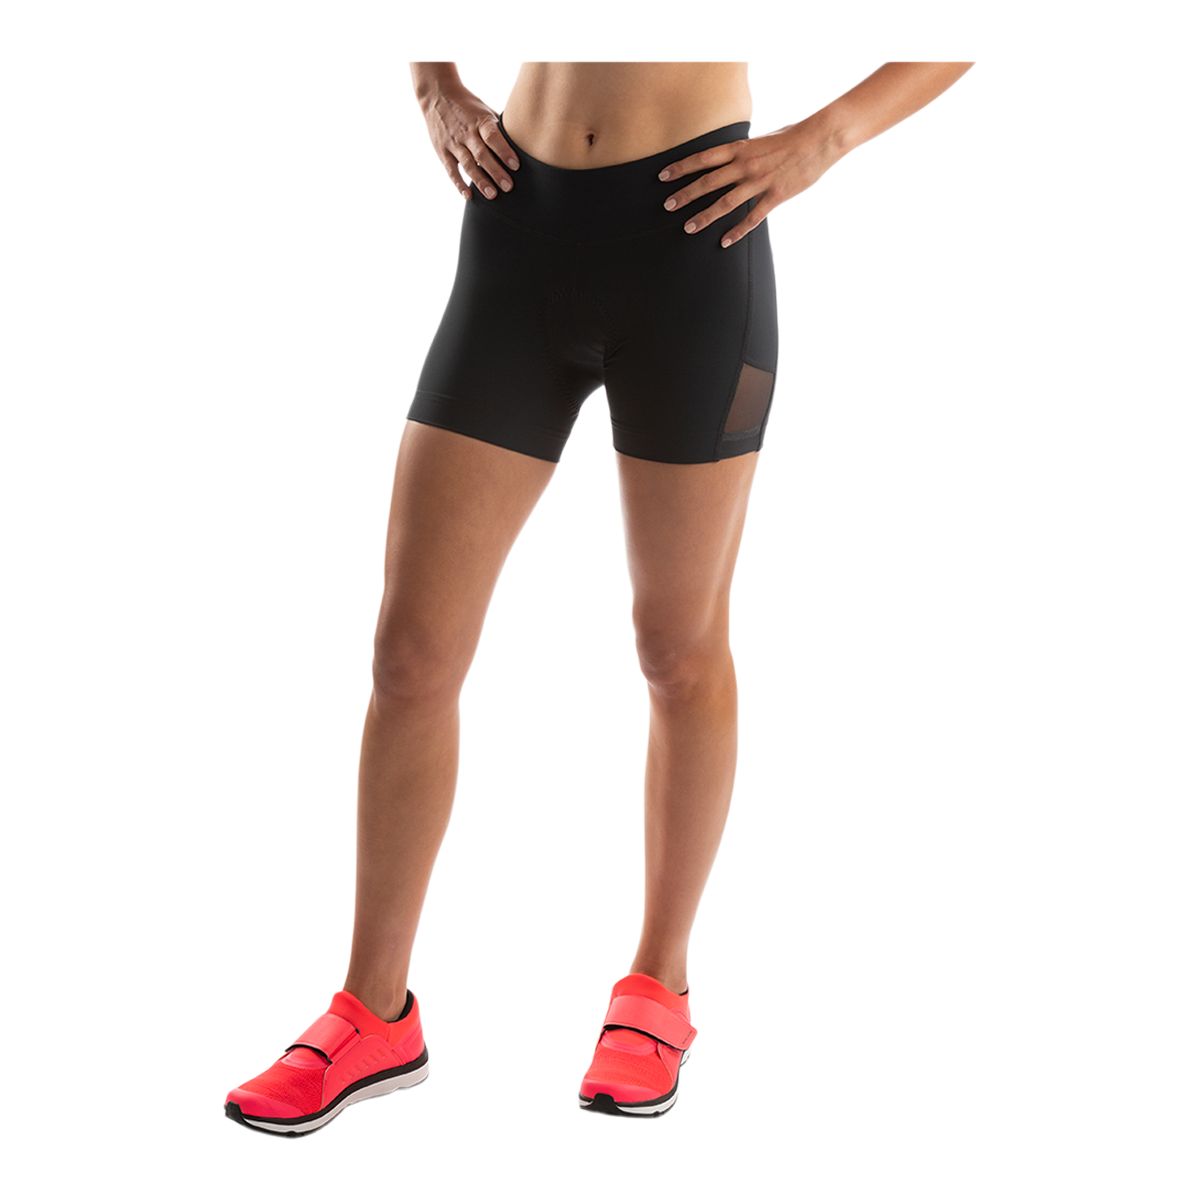 Salomon Women's Sense Aero Shorts, 5 Inch Inseam